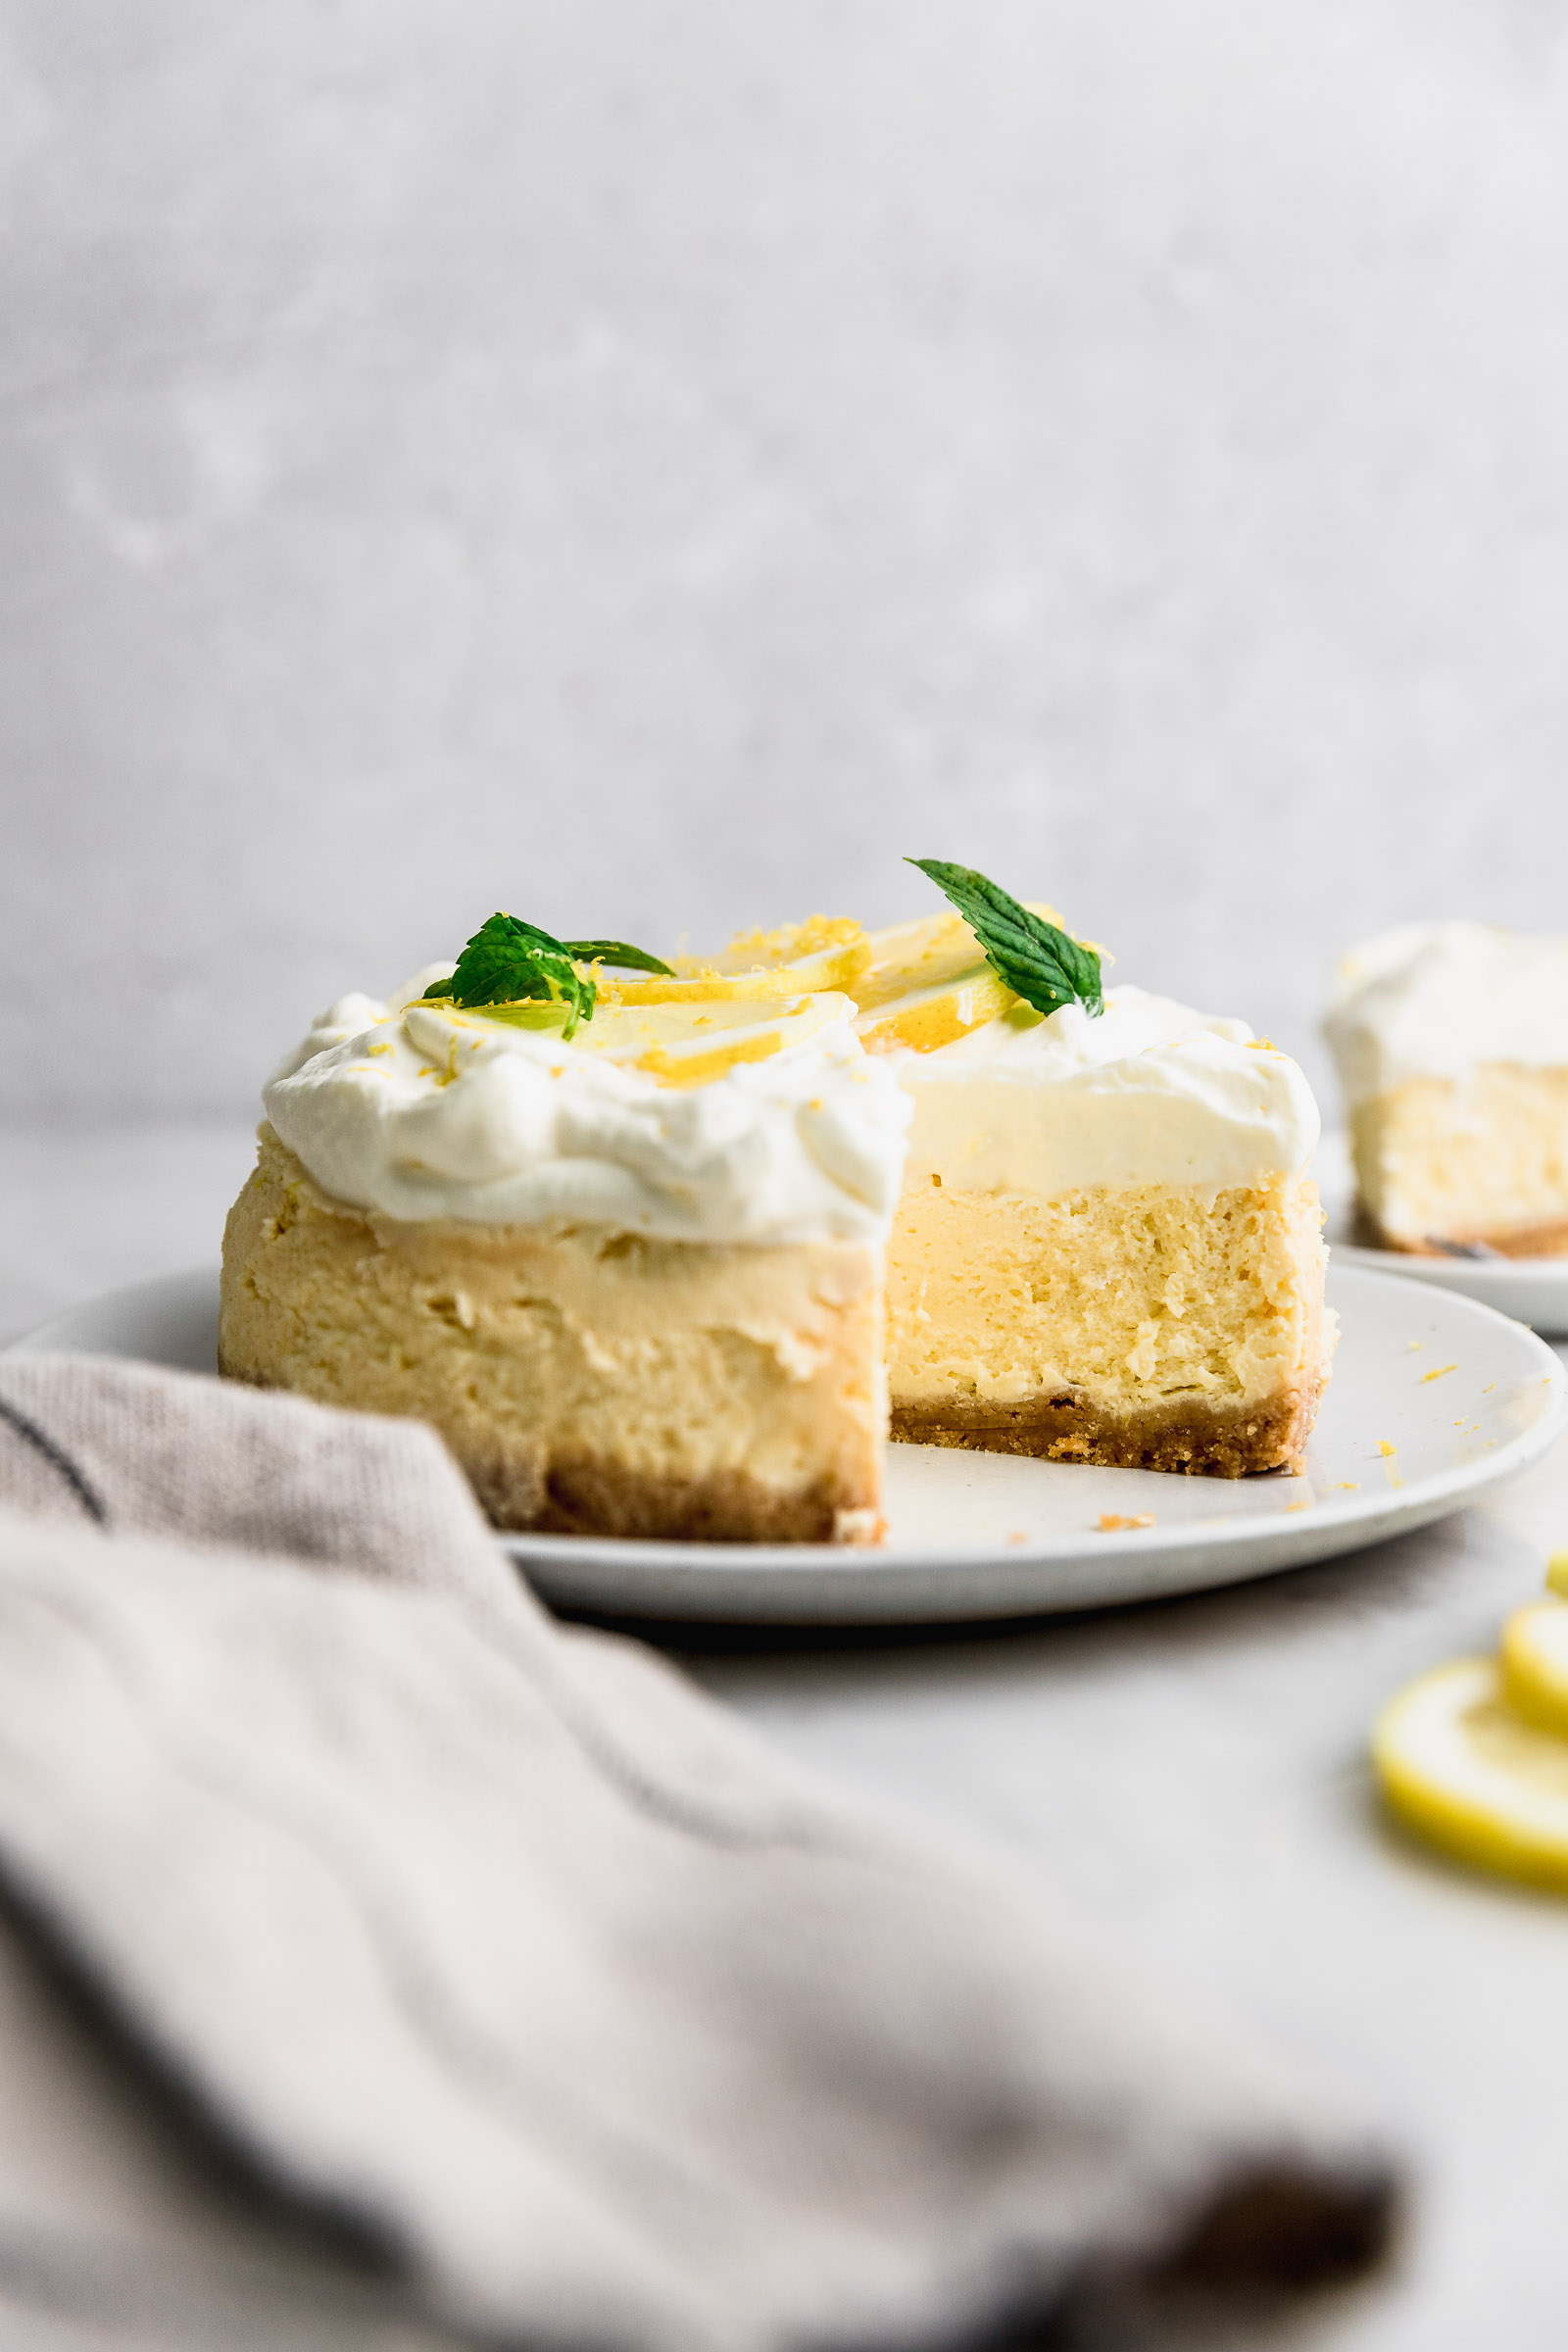 Receta de Cheesecake de limón - Instant Blog